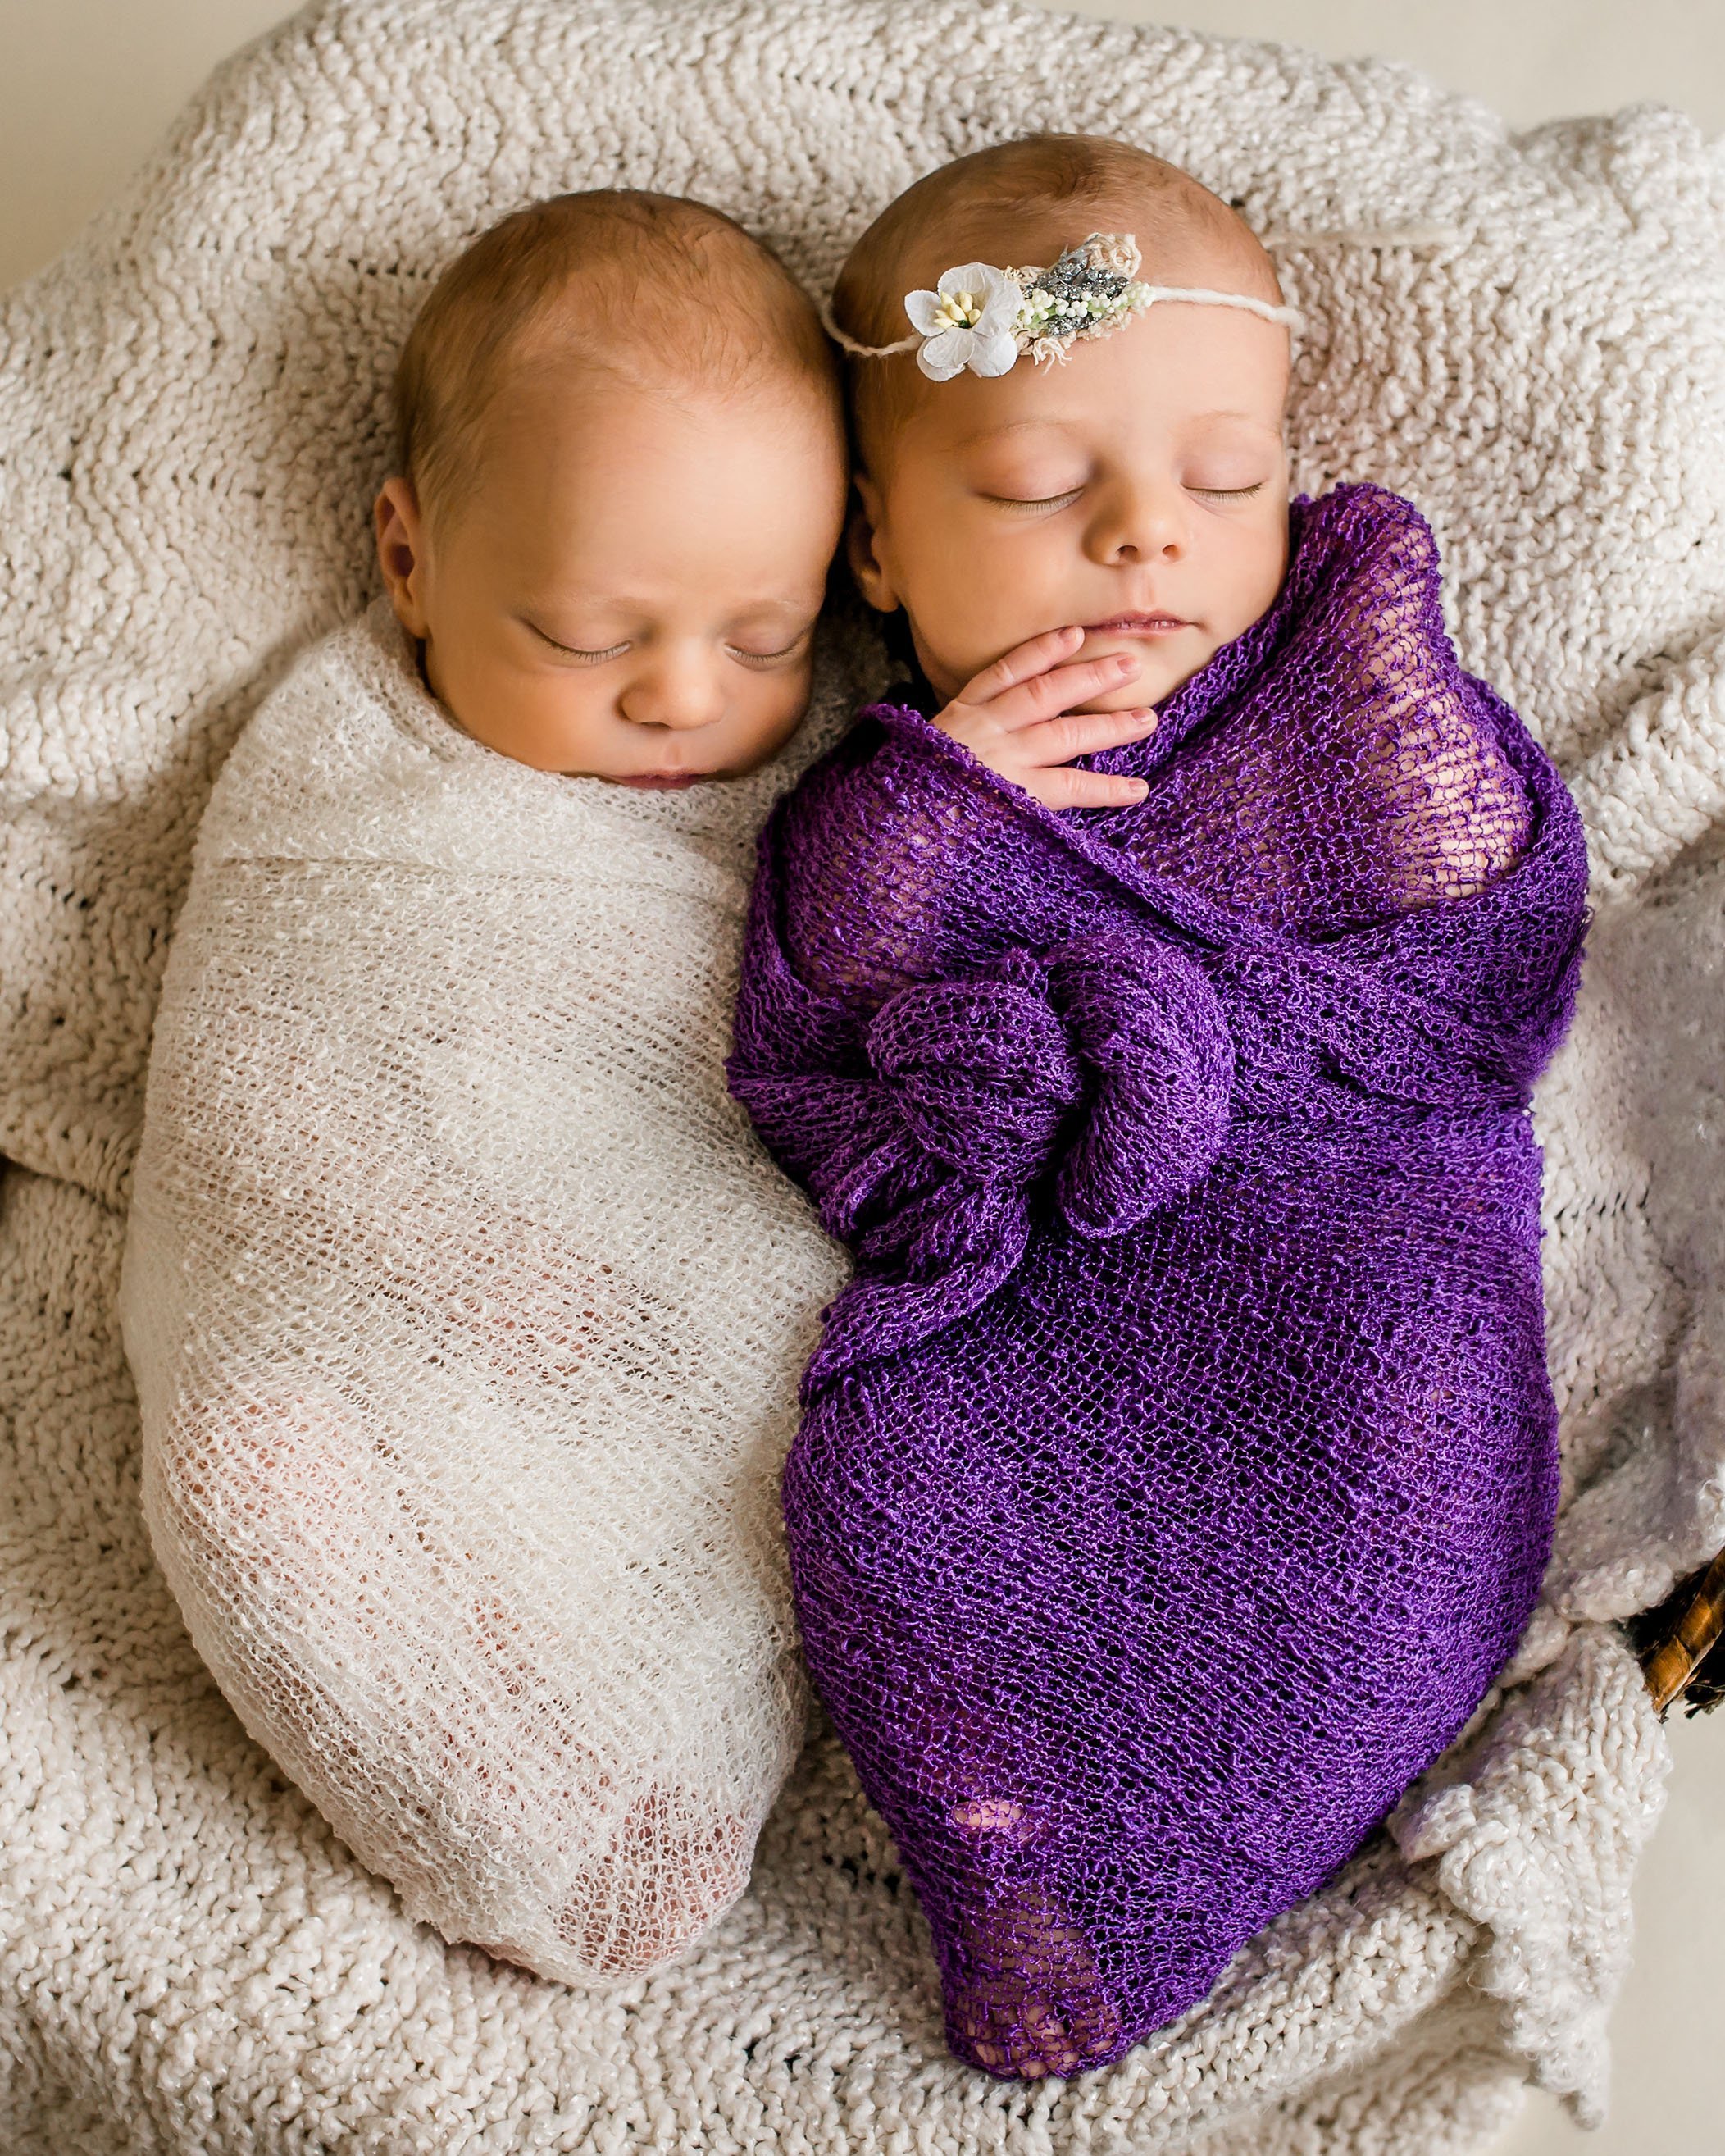 newborn twin girl wrapped in purple and newborn twin boy wrapped in cream